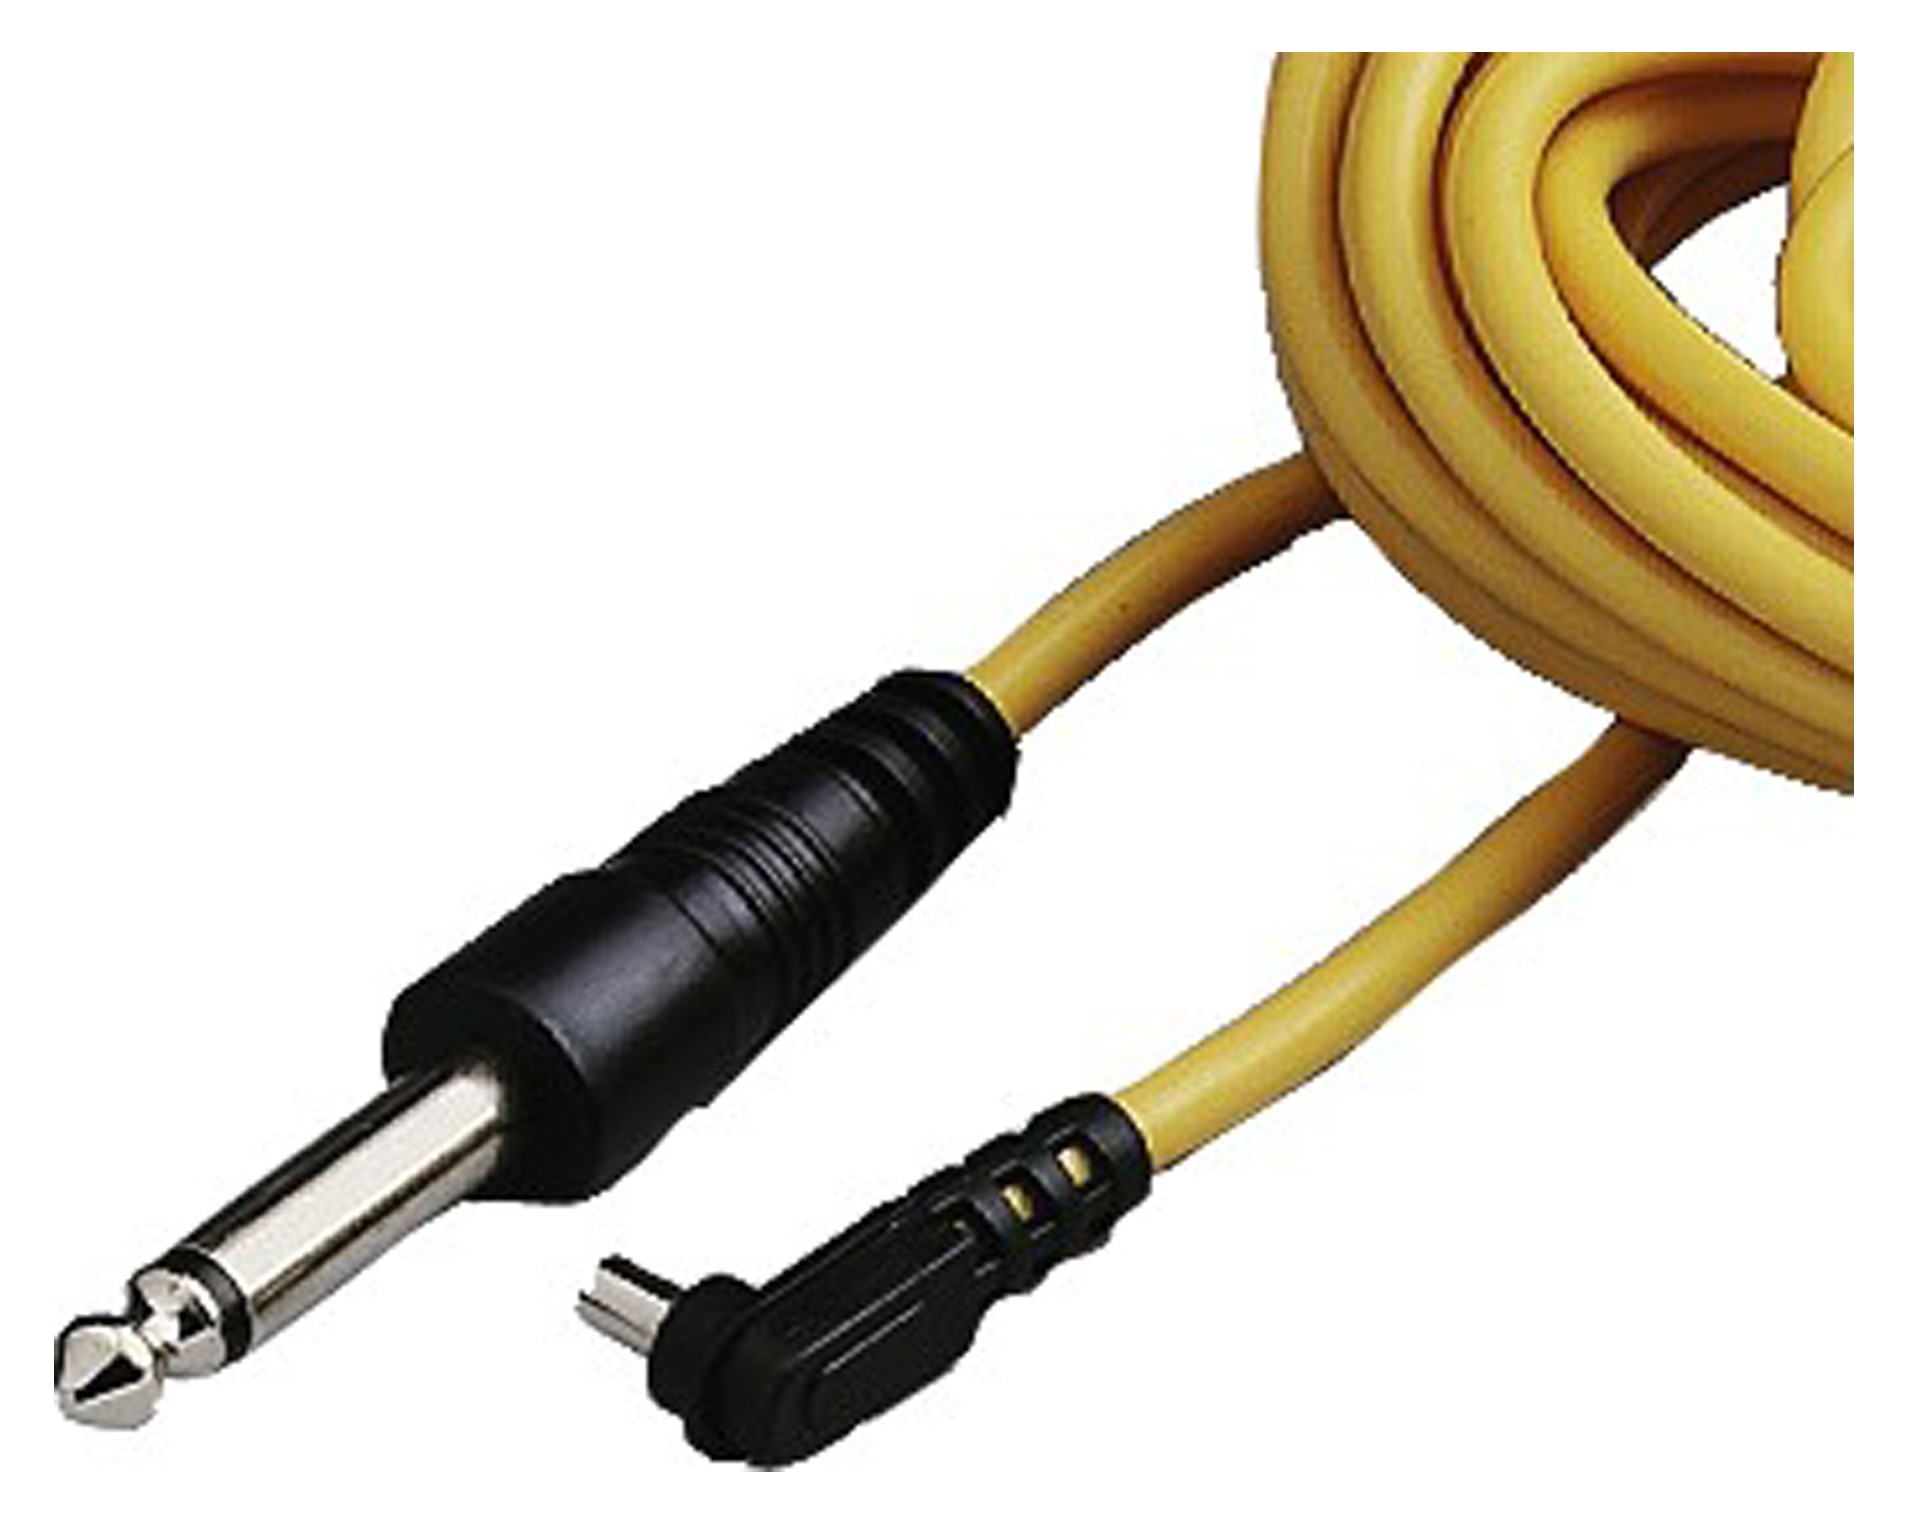 Провода Jack желтые. Желтый электрический шнур. Кабель синхронизации для студийной вспышки. Пятипиновый кабель синхронизации со вспышкой.